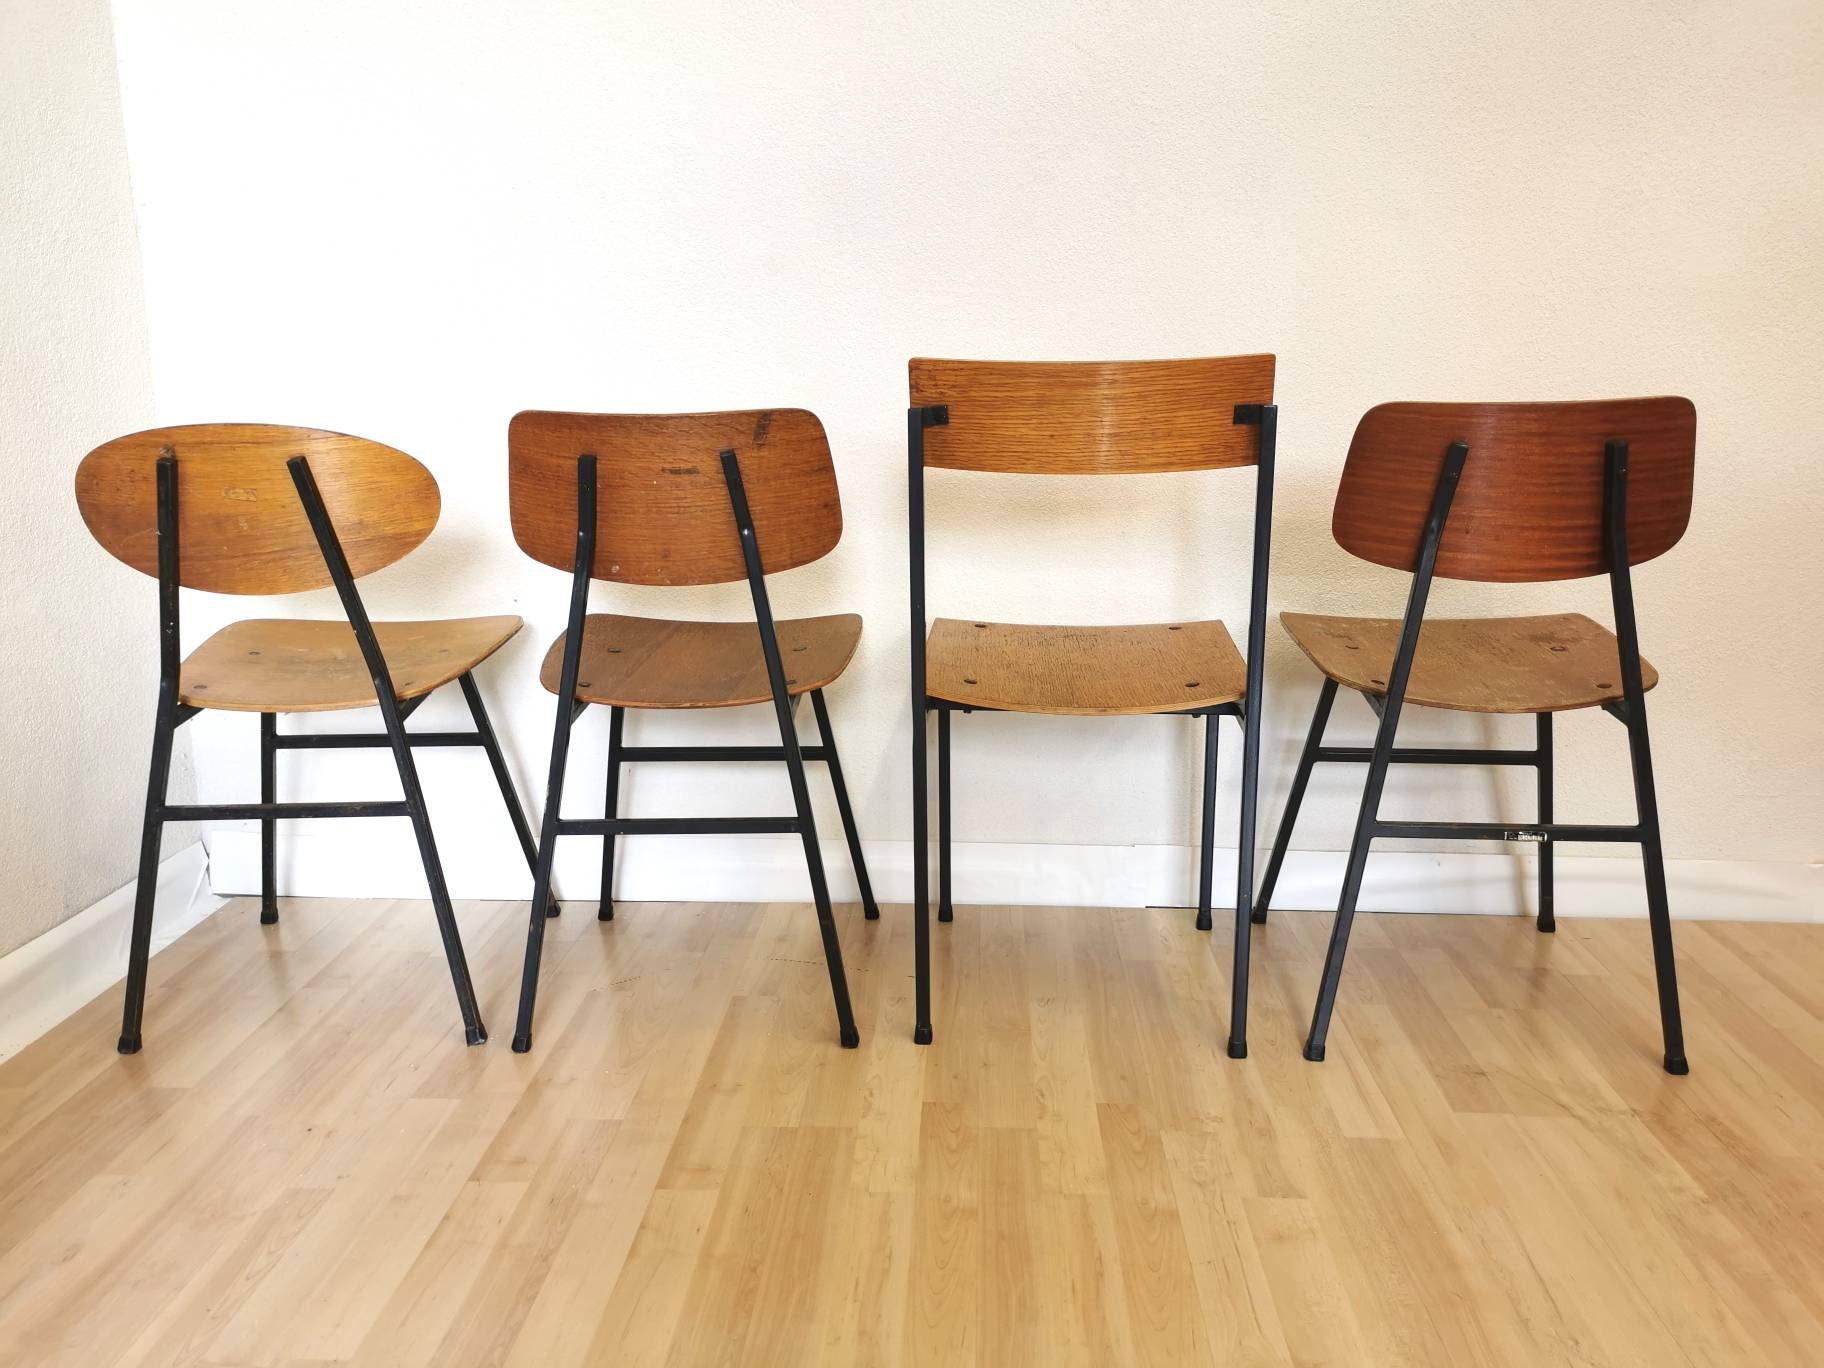 4er SET Vintage Esszimmerstühle aus Holz / Verschiedene Stühle von Stol  Kamnik, 1970er Jahre, Jugoslawien / 70er Jahre / Esszimmer / Industrial  Home Decor